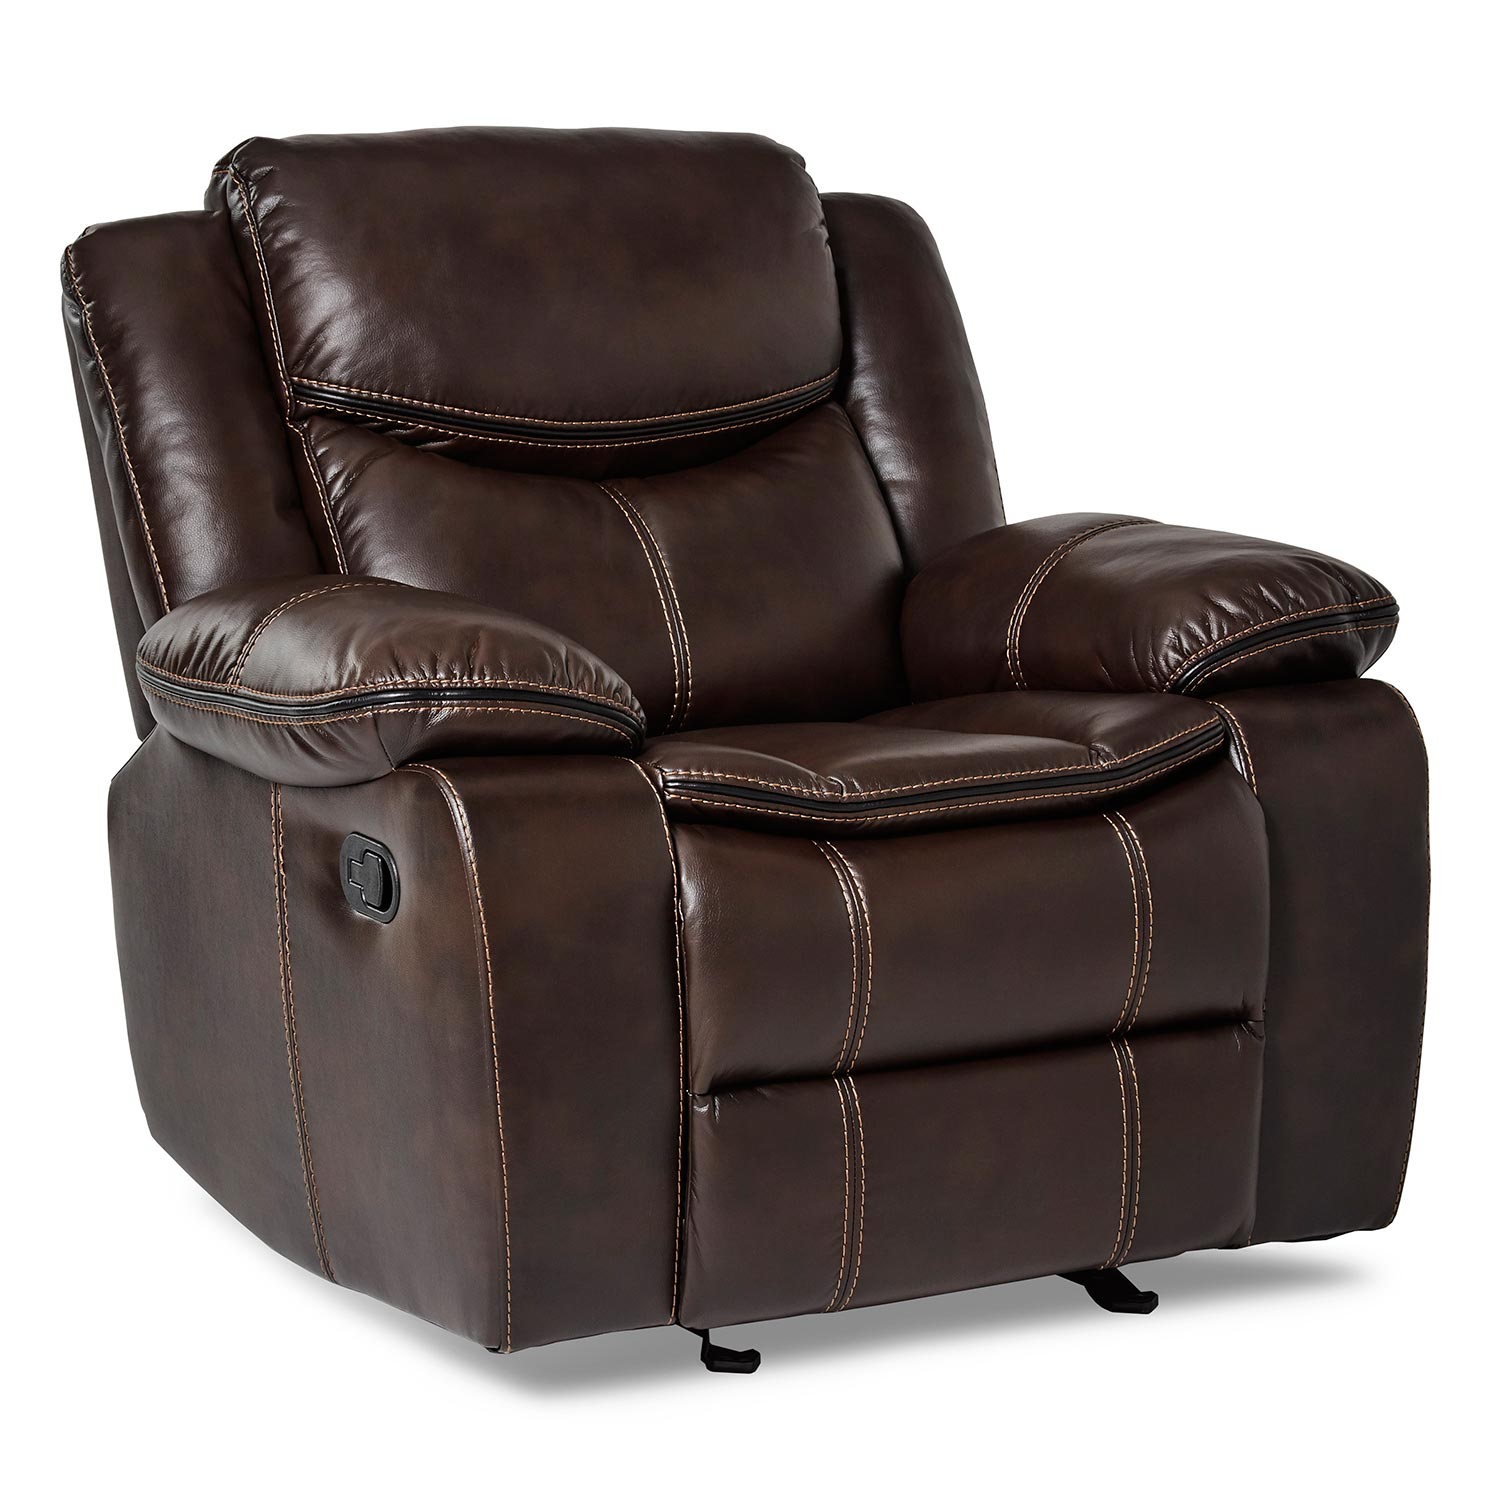 Homelegance Bastrop Glider Reclining Chair - Dark Brown